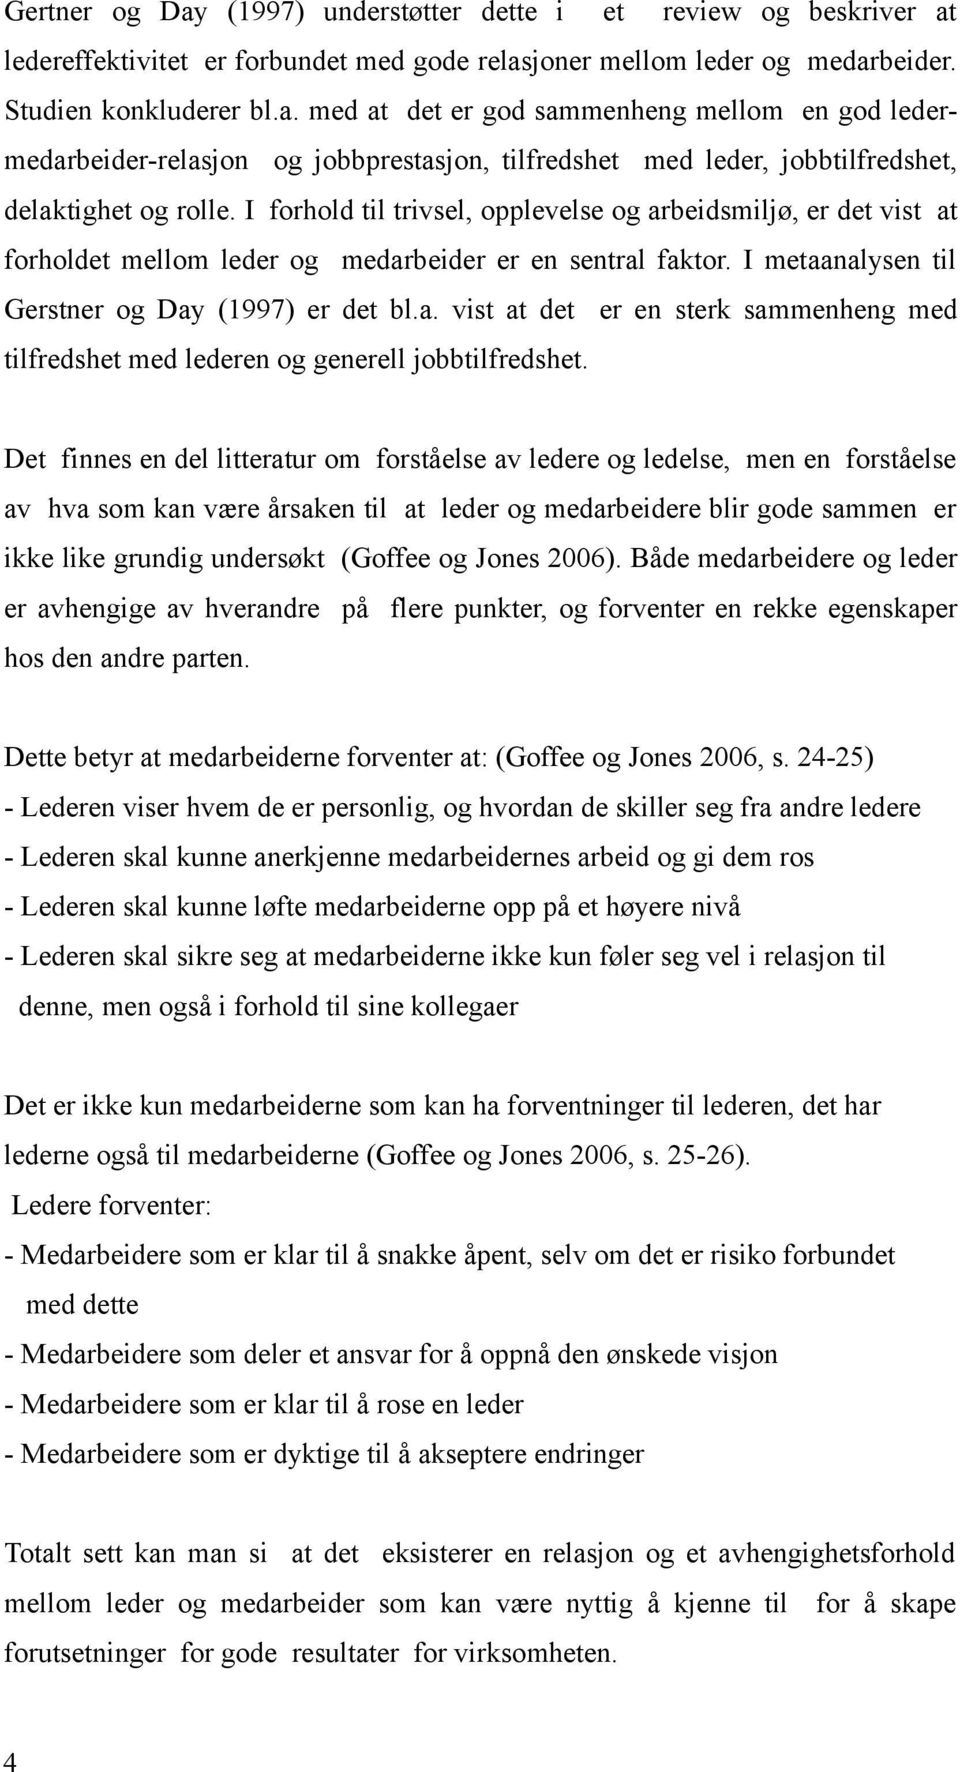 Leder-medarbeider-relasjon og jobbtilfredshet/ arbeidsmiljø i helseenheten  i en liten kommune. - PDF Gratis nedlasting